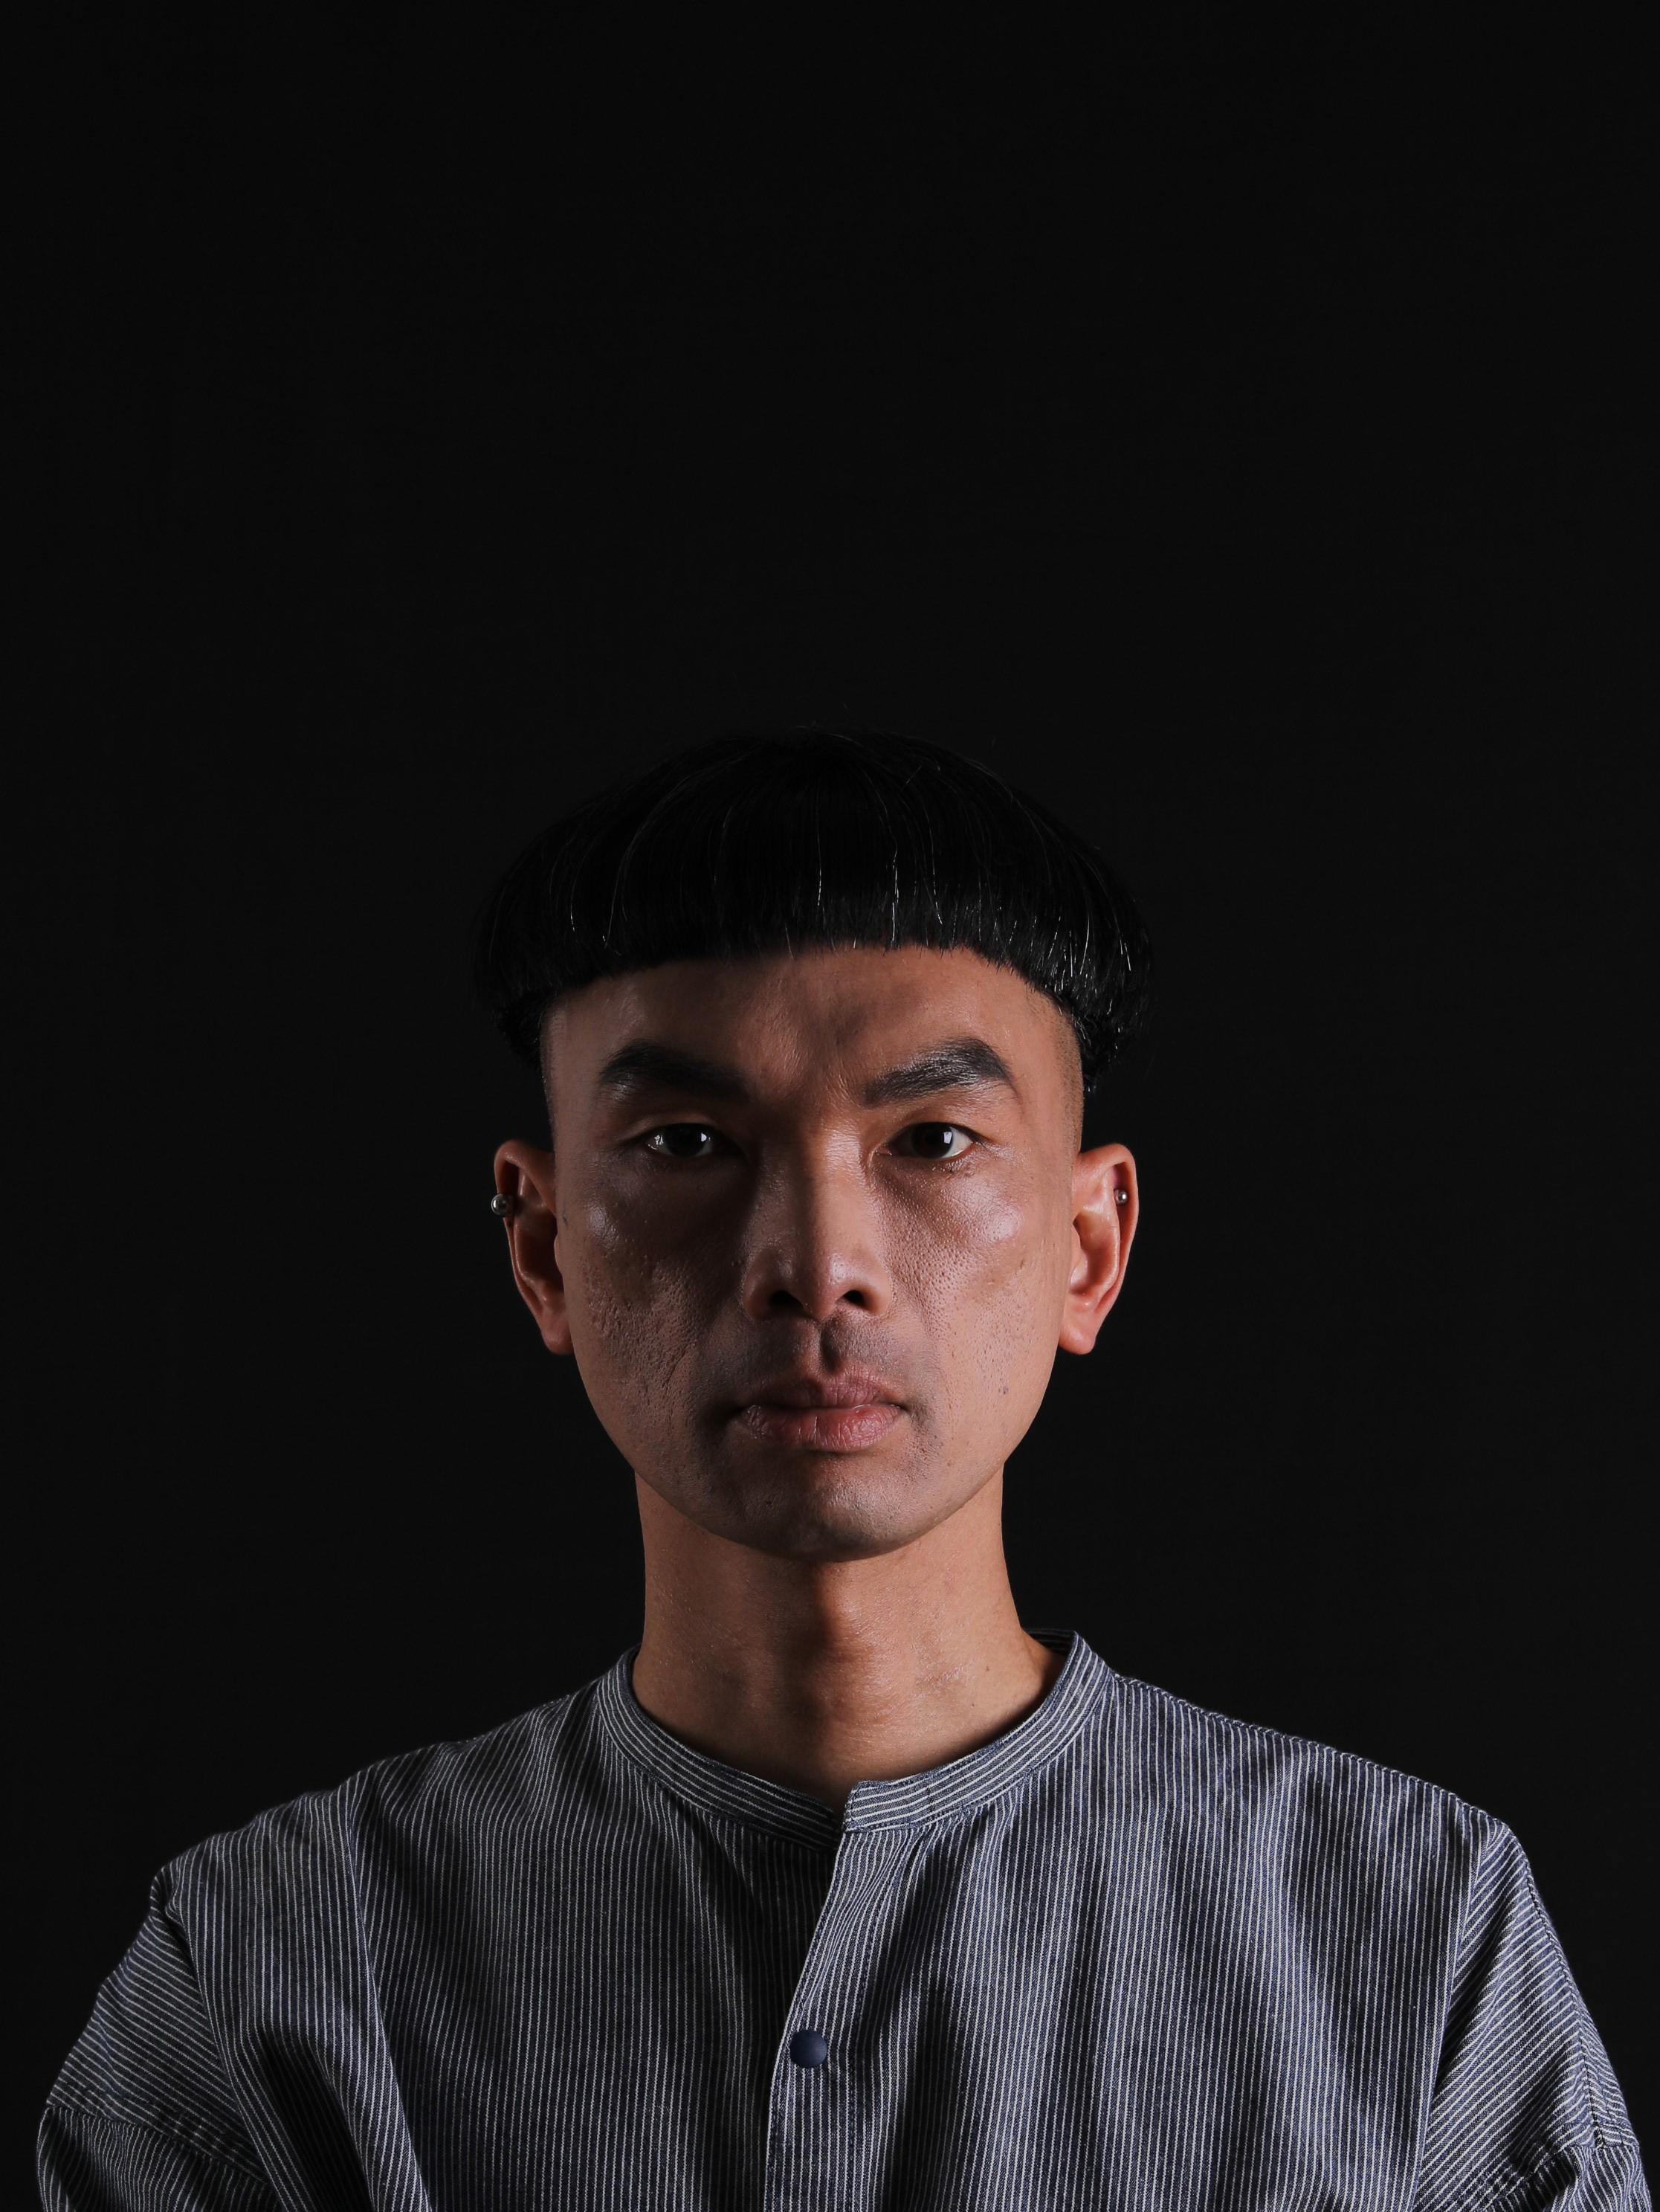 媒體藝術家梁基爵及劇場導演黃俊達攜手創作的跨領域作品《HACK》十一月四日至六日在香港文化中心劇場上演。圖為梁基爵，他擅於運用科技、媒體藝術、空間和聲音進行創作。